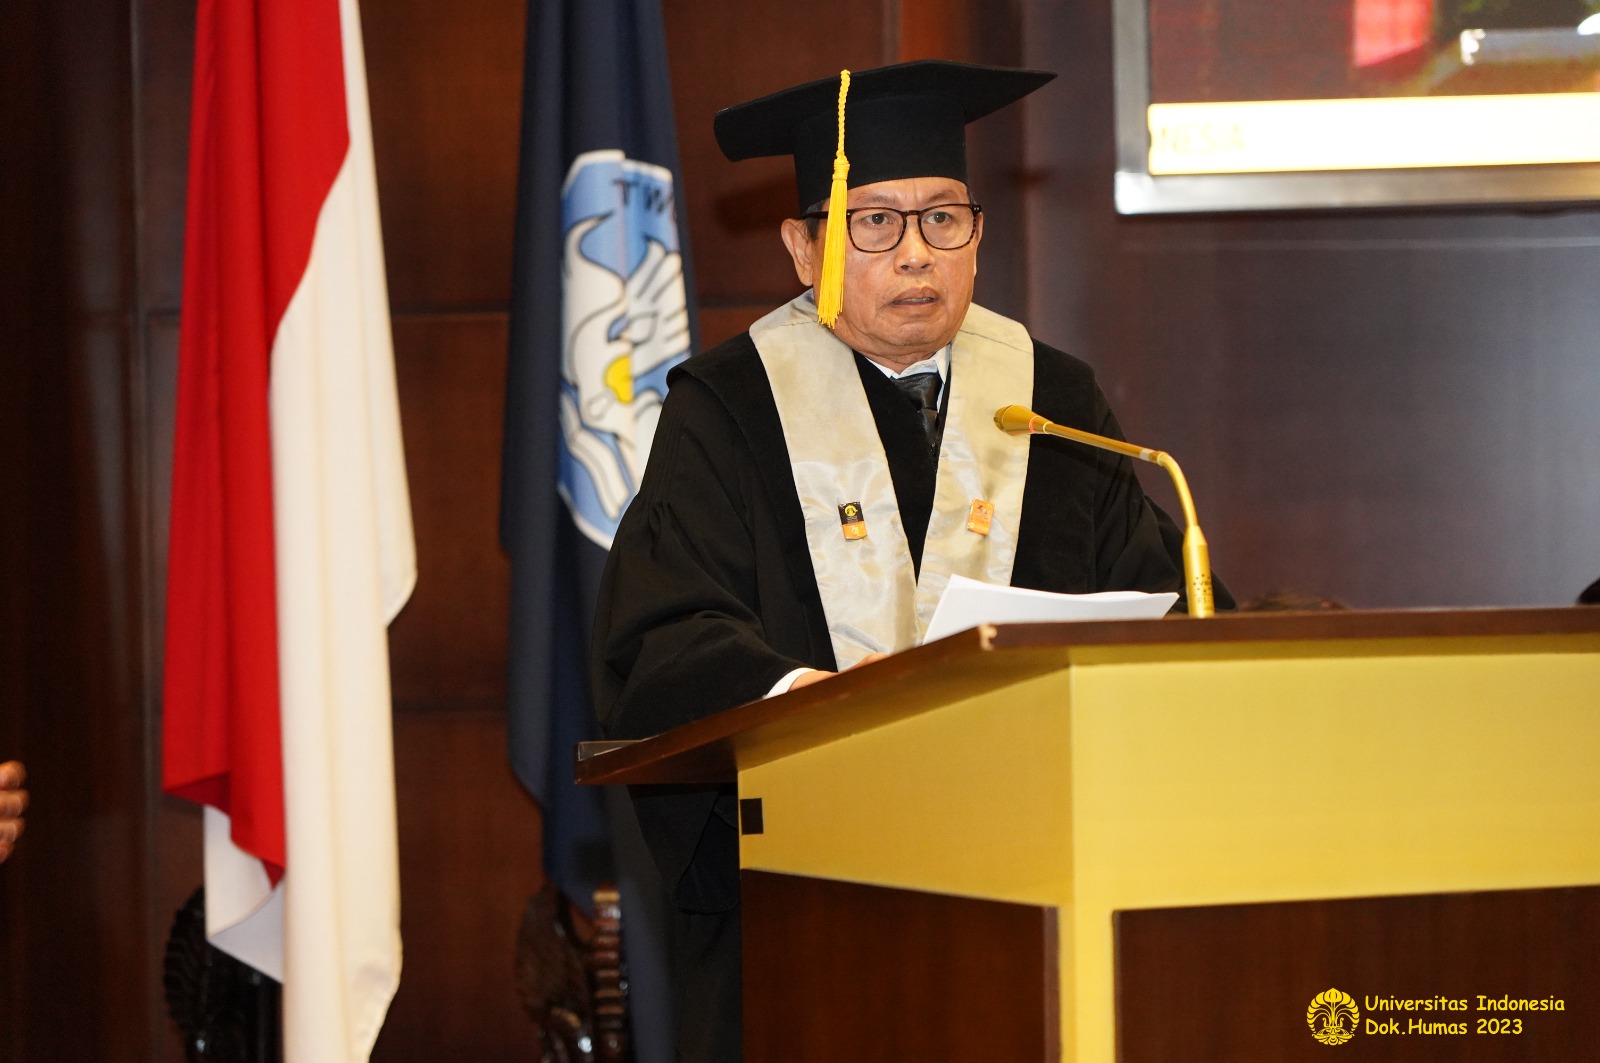 Prof. Sugihaso Kaji Kebijakan Moneter untuk Mendorong Pertumbuhan Ekonomi Indonesia